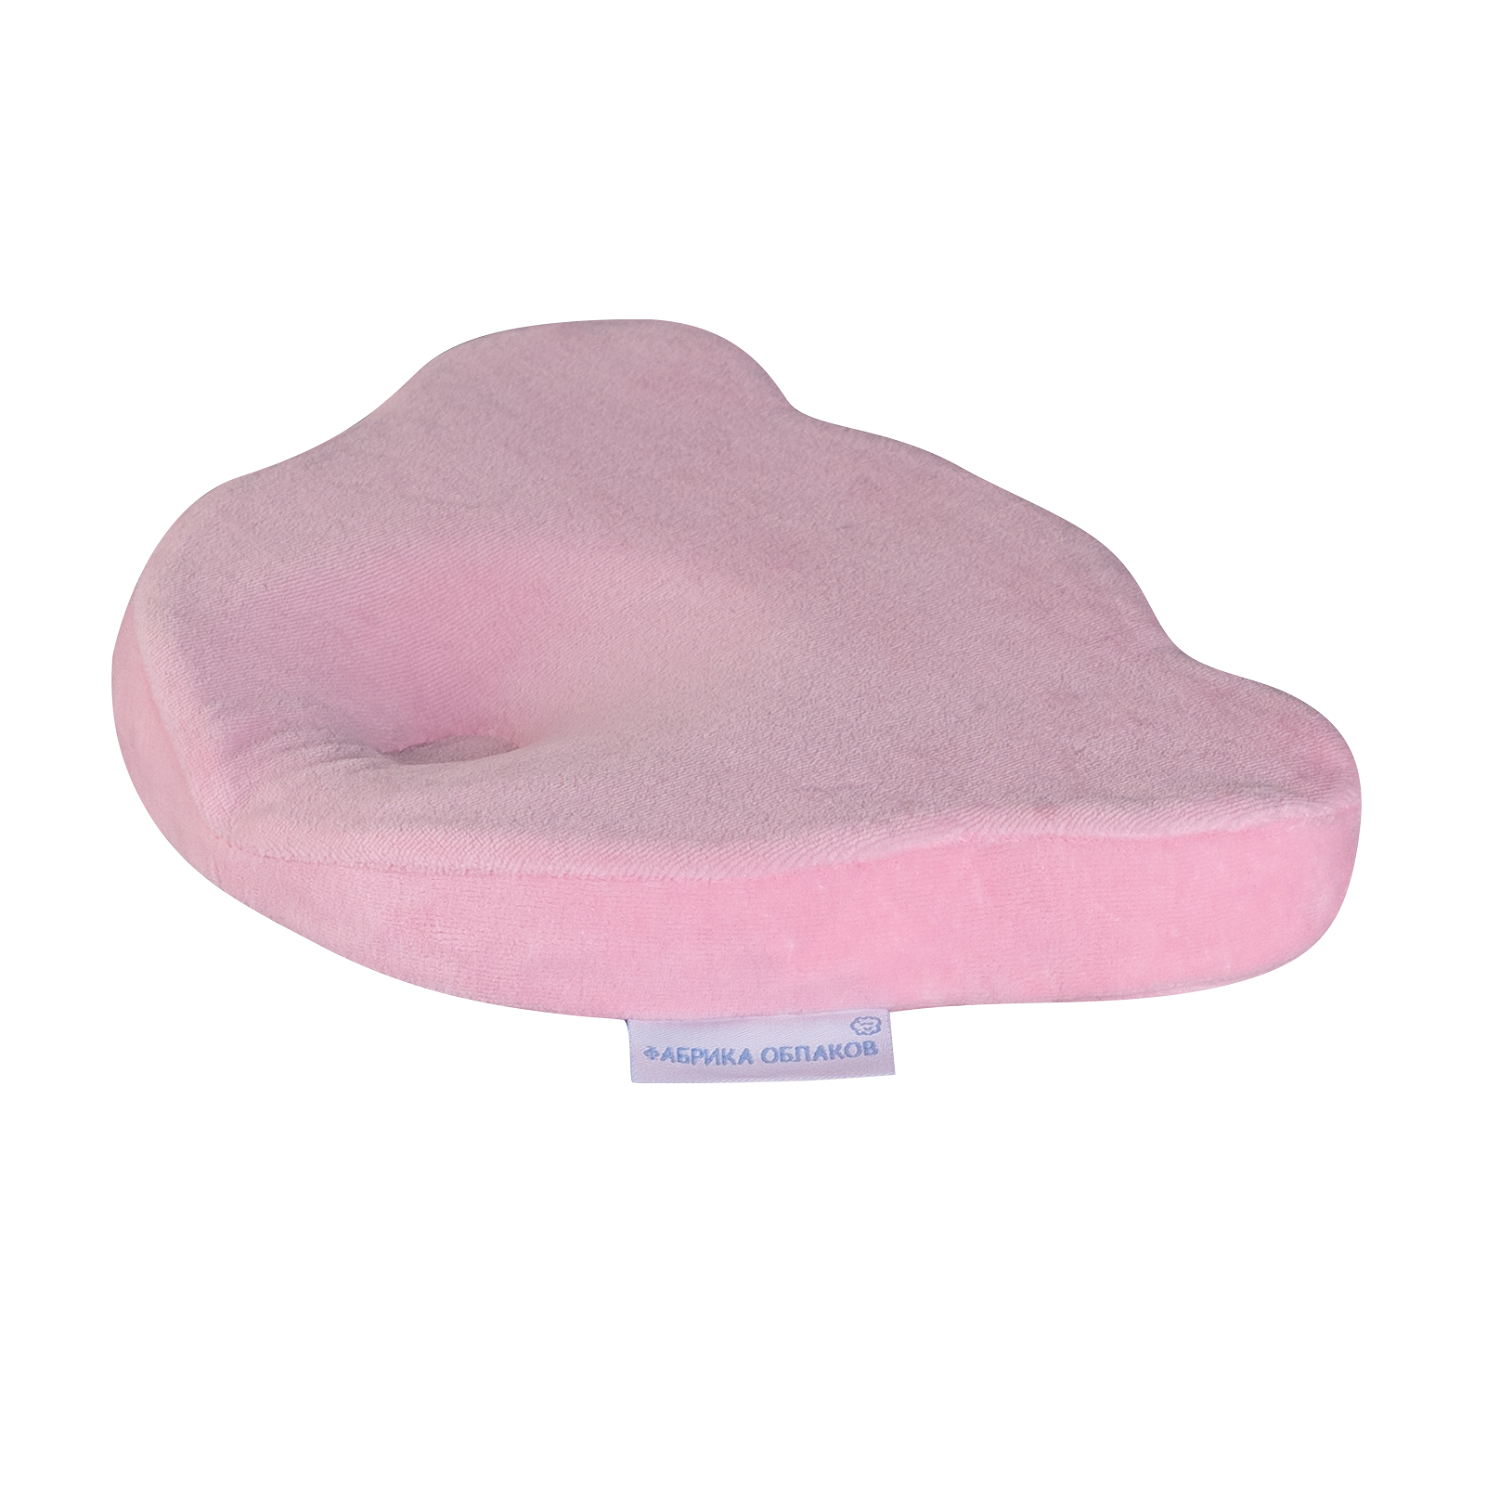 Подушка детская Фабрика облаков ортопедическая Мишка, 0+, розовый МШ.2.4/роз. мягкая игрушка подушка кот батон 150 см розовый